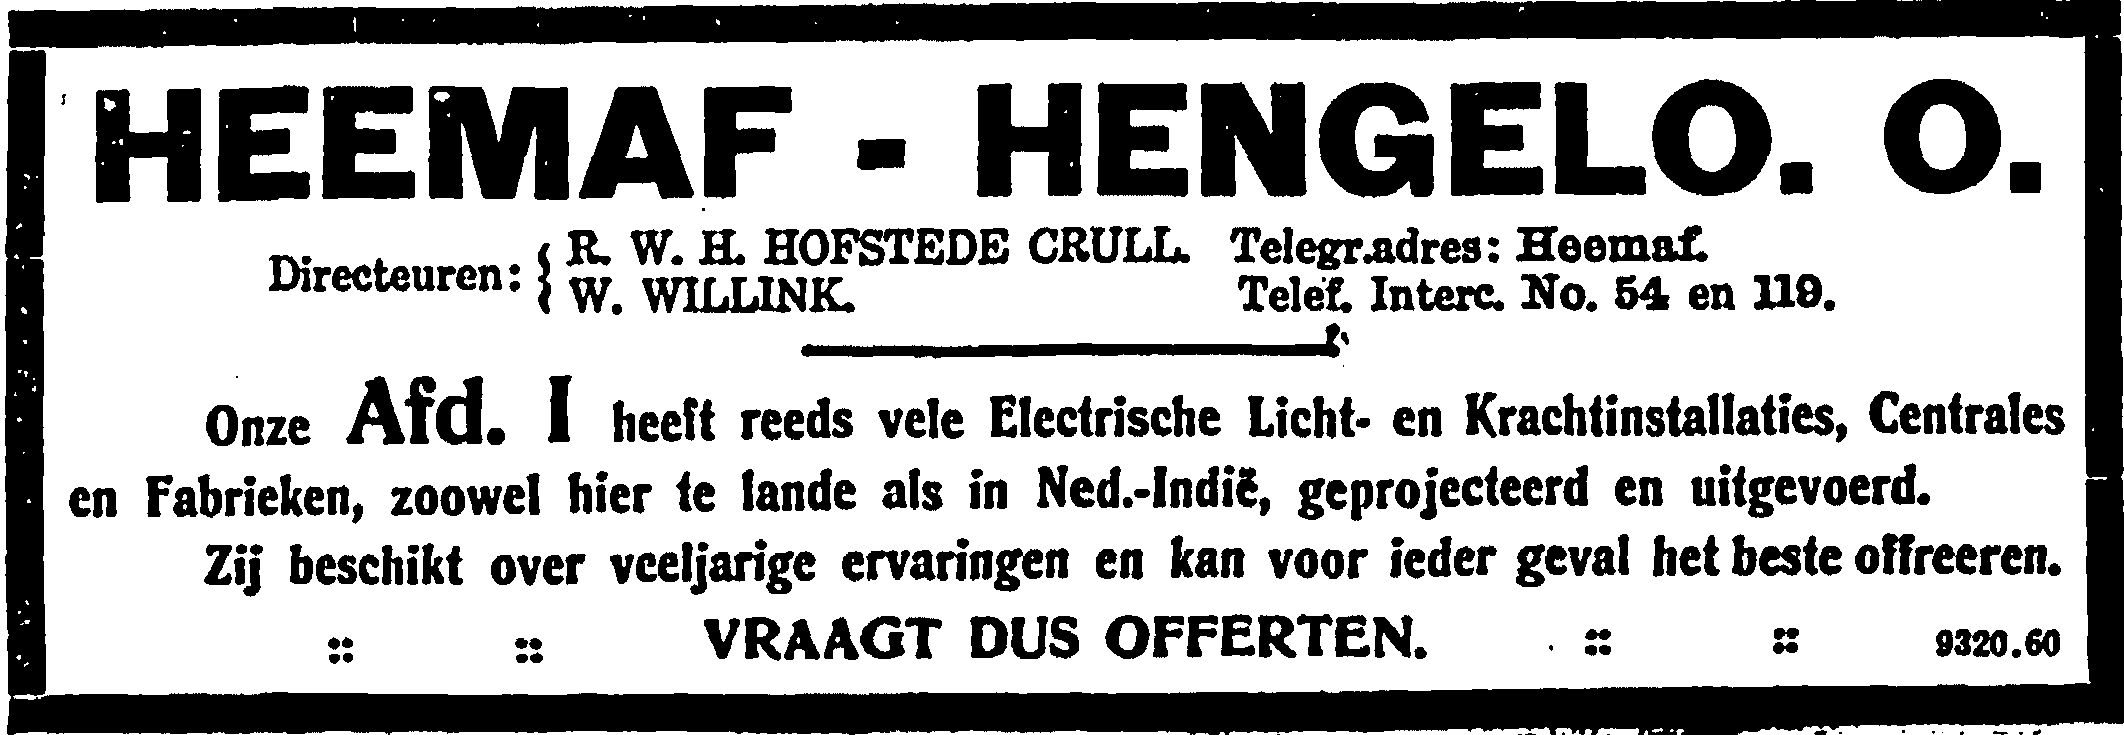 Heemaf reclame 1913